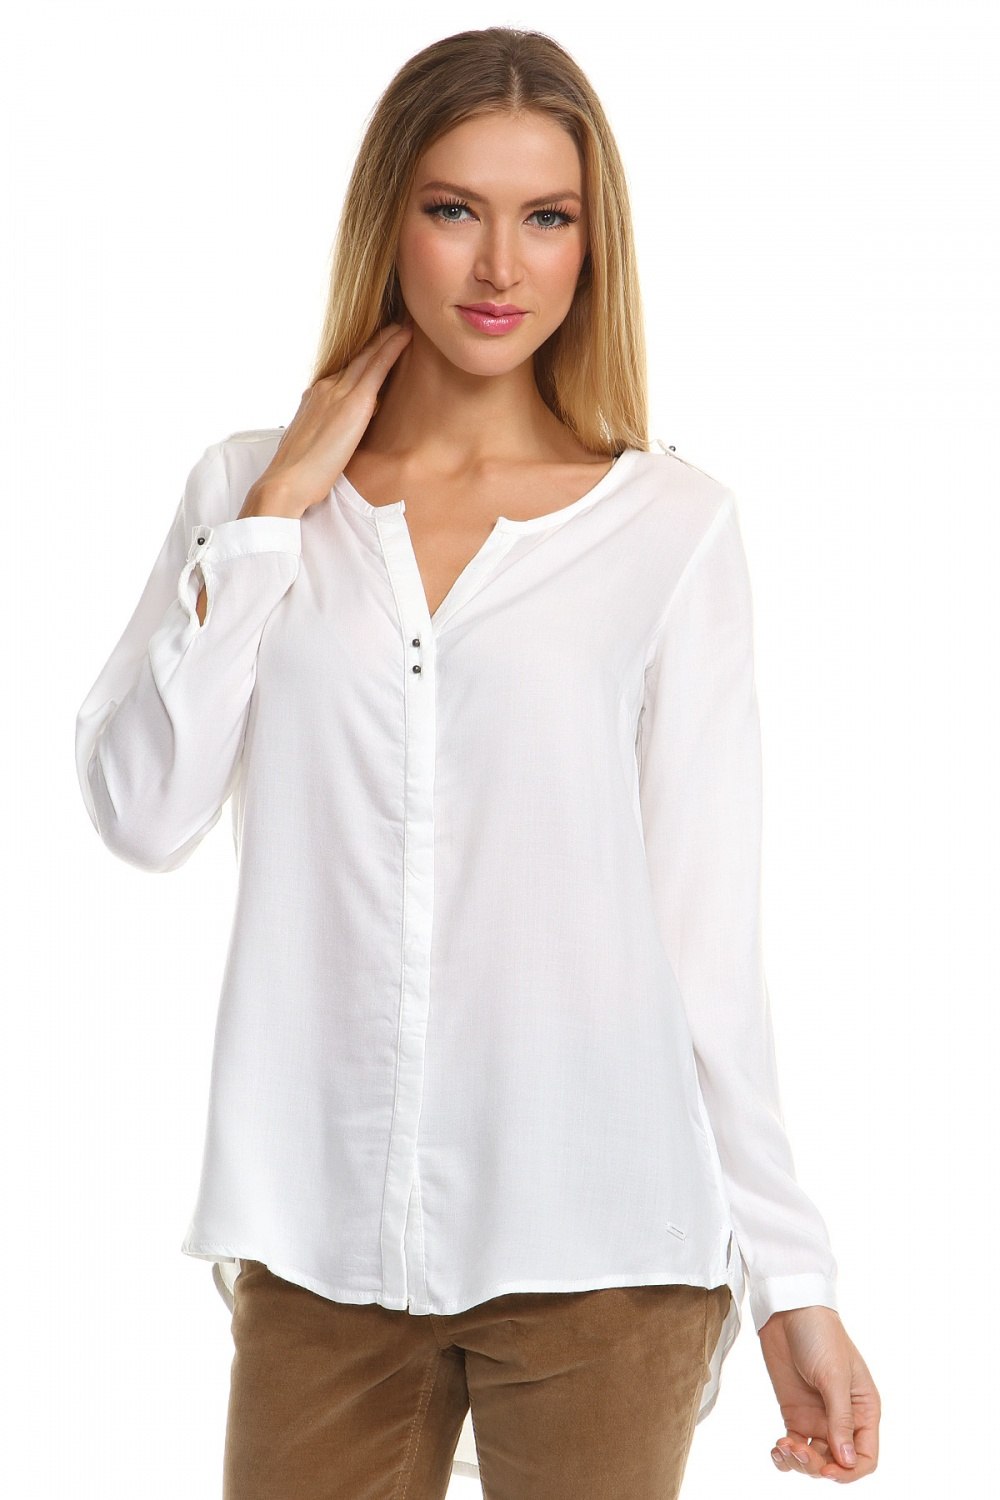 Недорогие блузки интернете. Блузка женская. Белая блузка. Рубашка женская. Белая блузка женская.